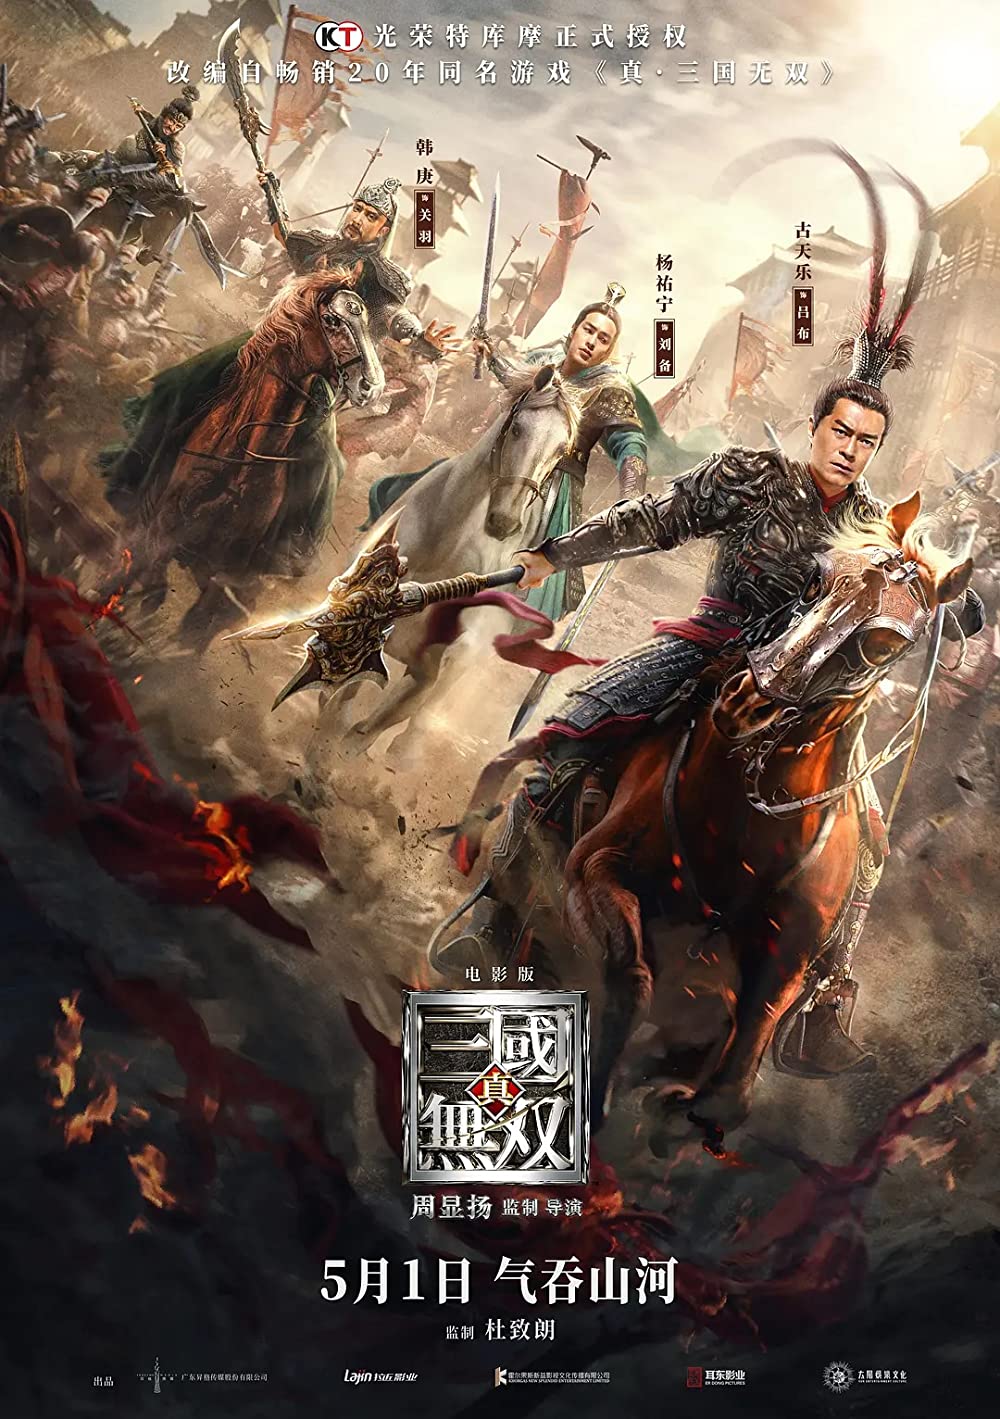 ดูหนังออนไลน์ฟรี Dynasty Warriors (2021) ไดนาสตี้วอริเออร์ มหาสงครามขุนศึกสามก๊ก